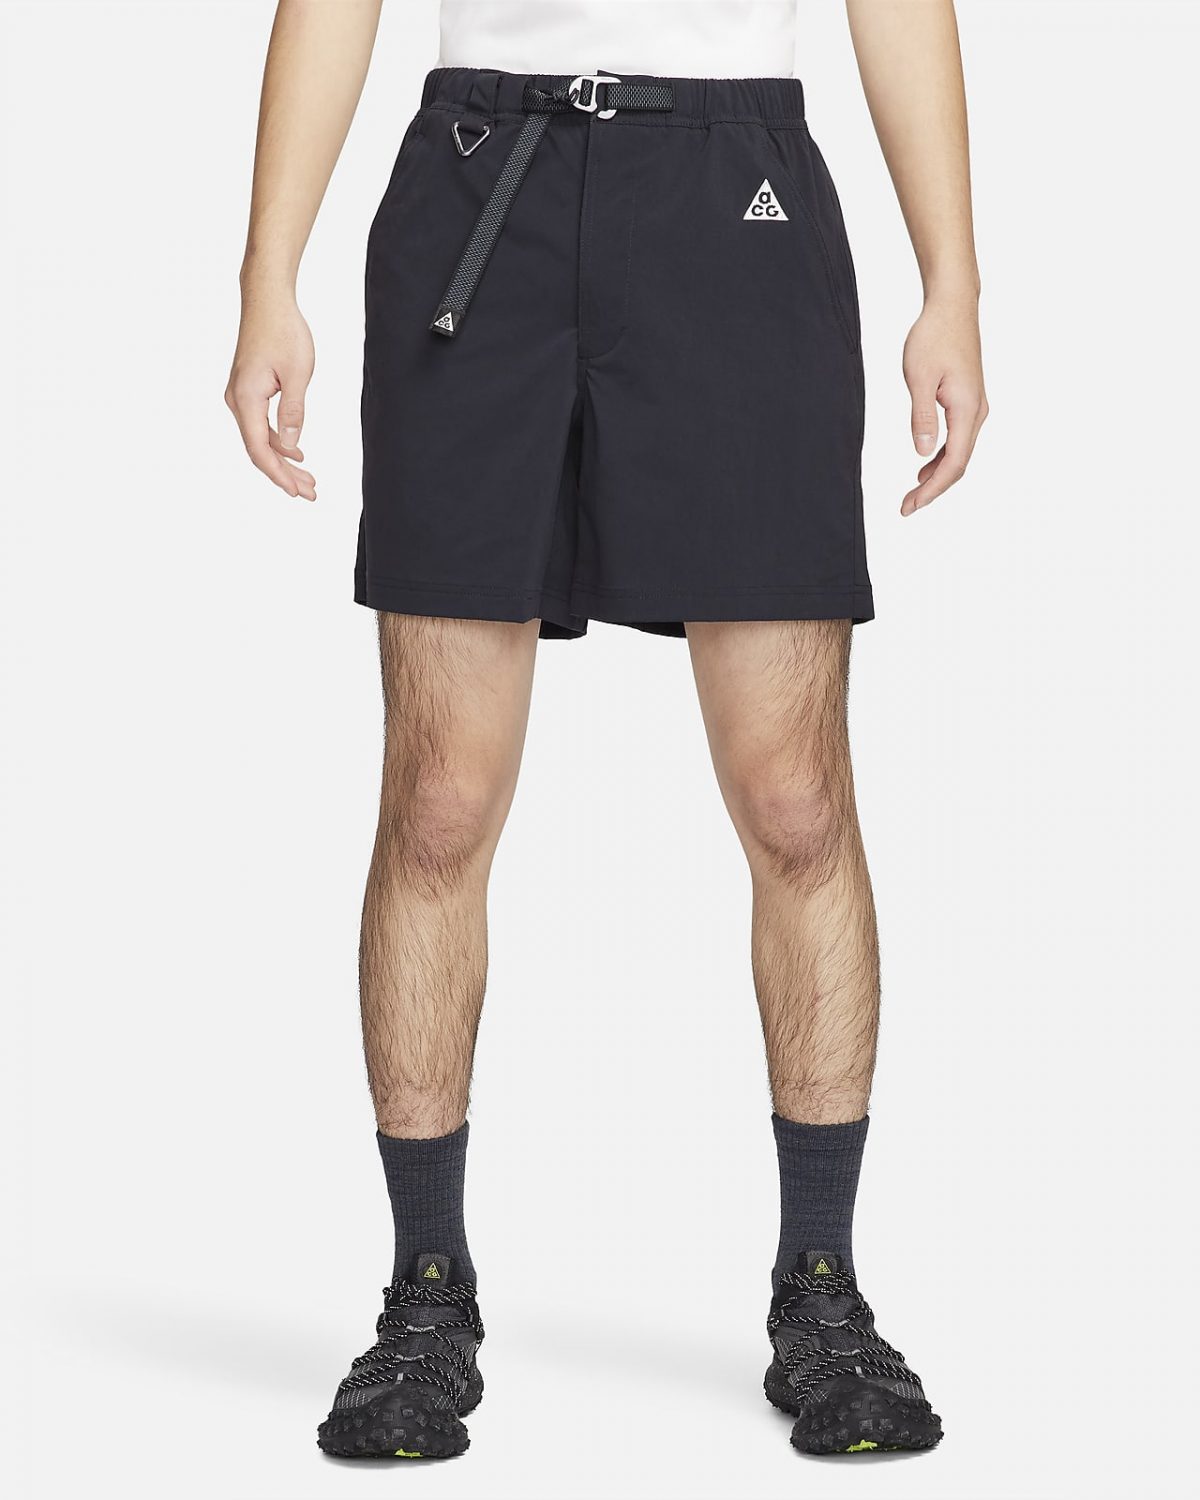 Мужские шорты Nike ACG черные фото